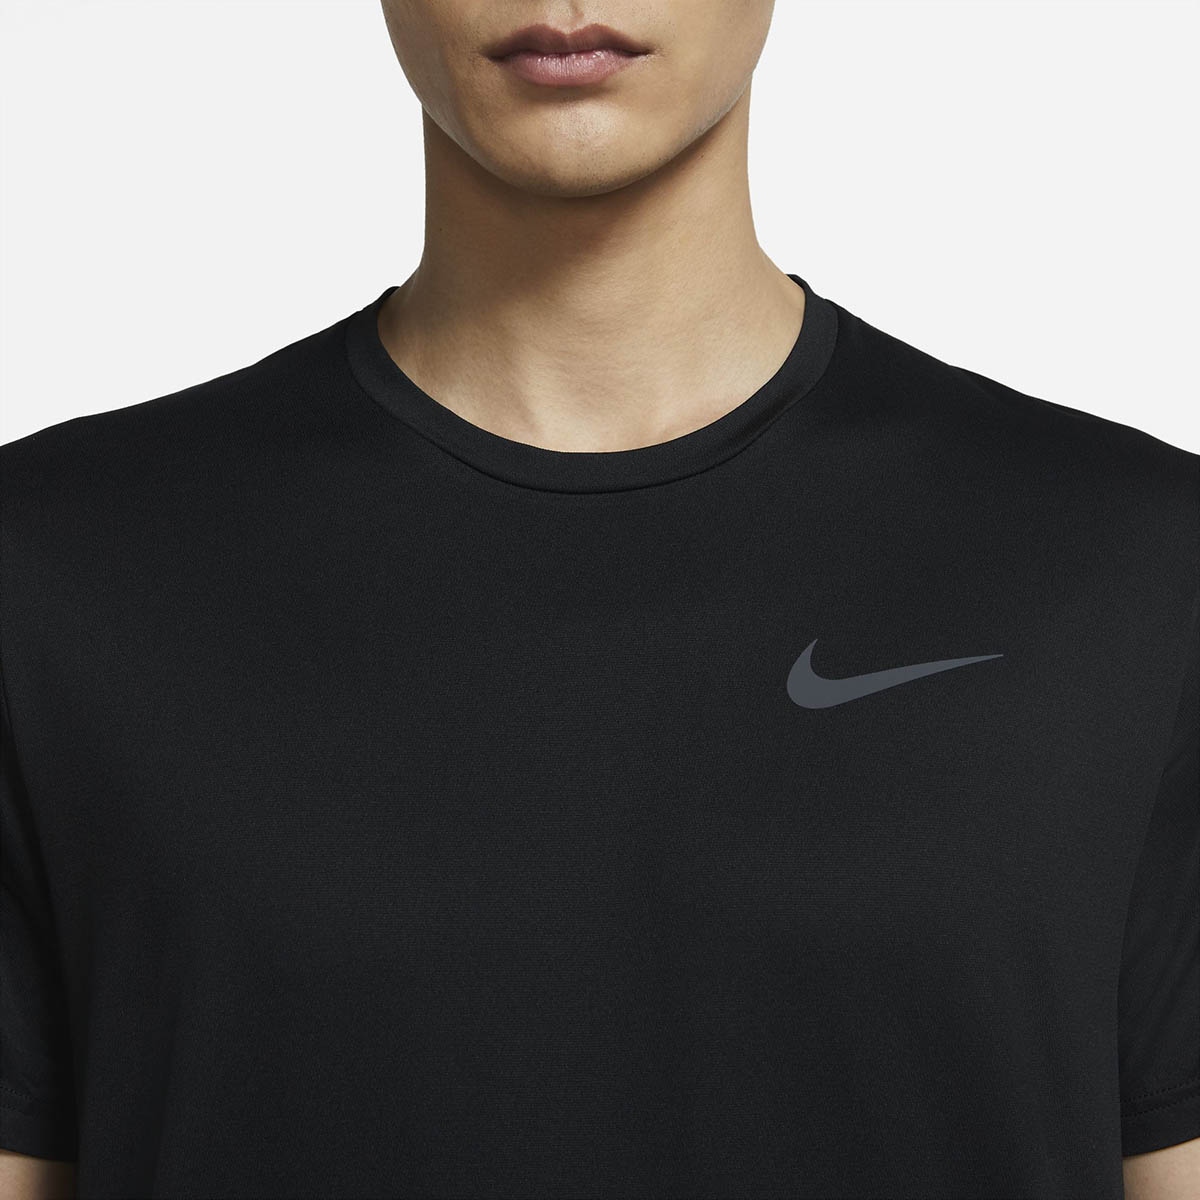 Nike Pro Dri-Fit Shortsleeve, , large image number null